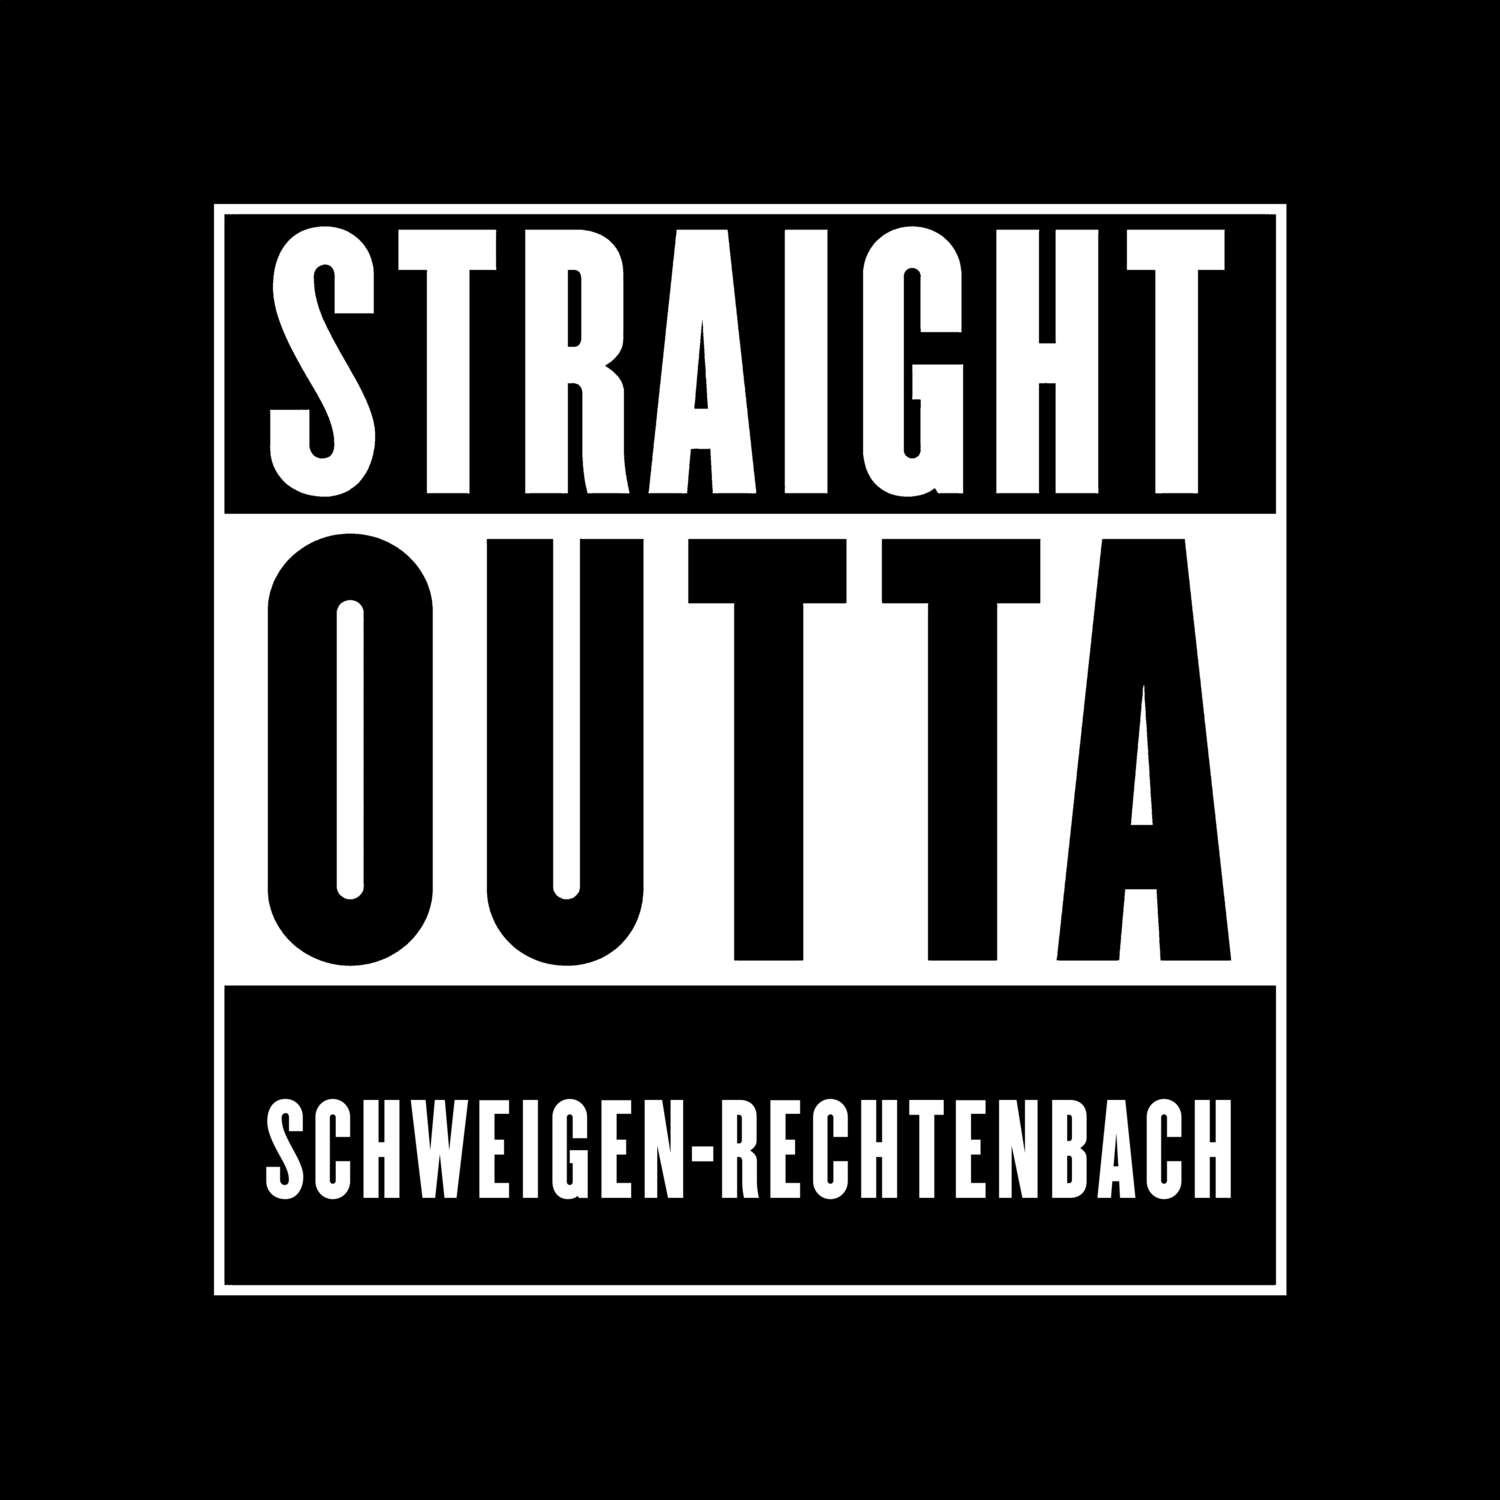 Schweigen-Rechtenbach T-Shirt »Straight Outta«